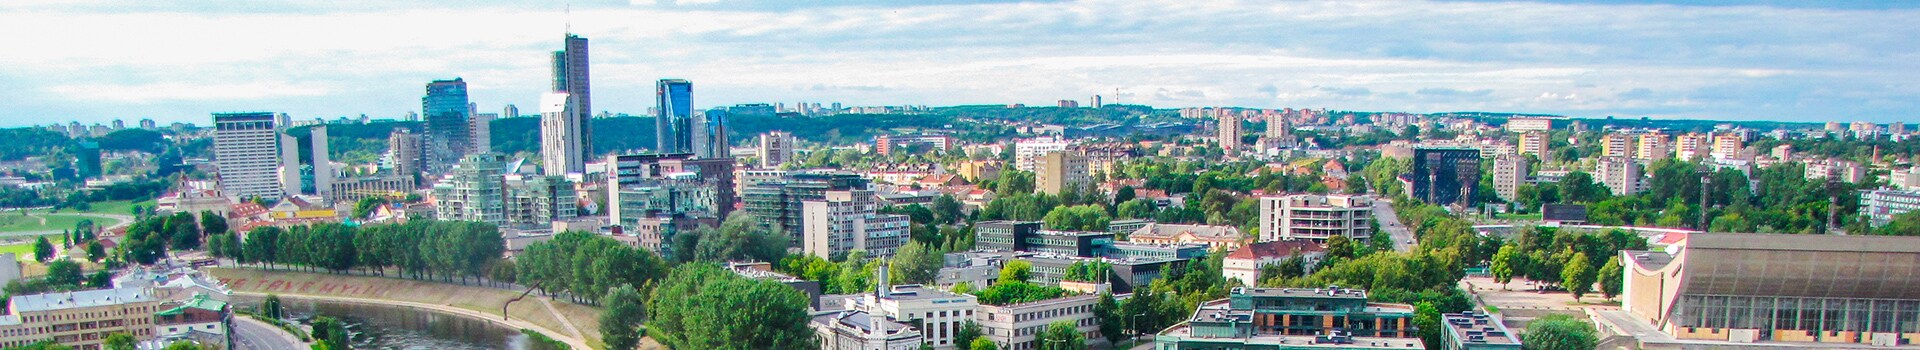 Dortmund - Vilnius